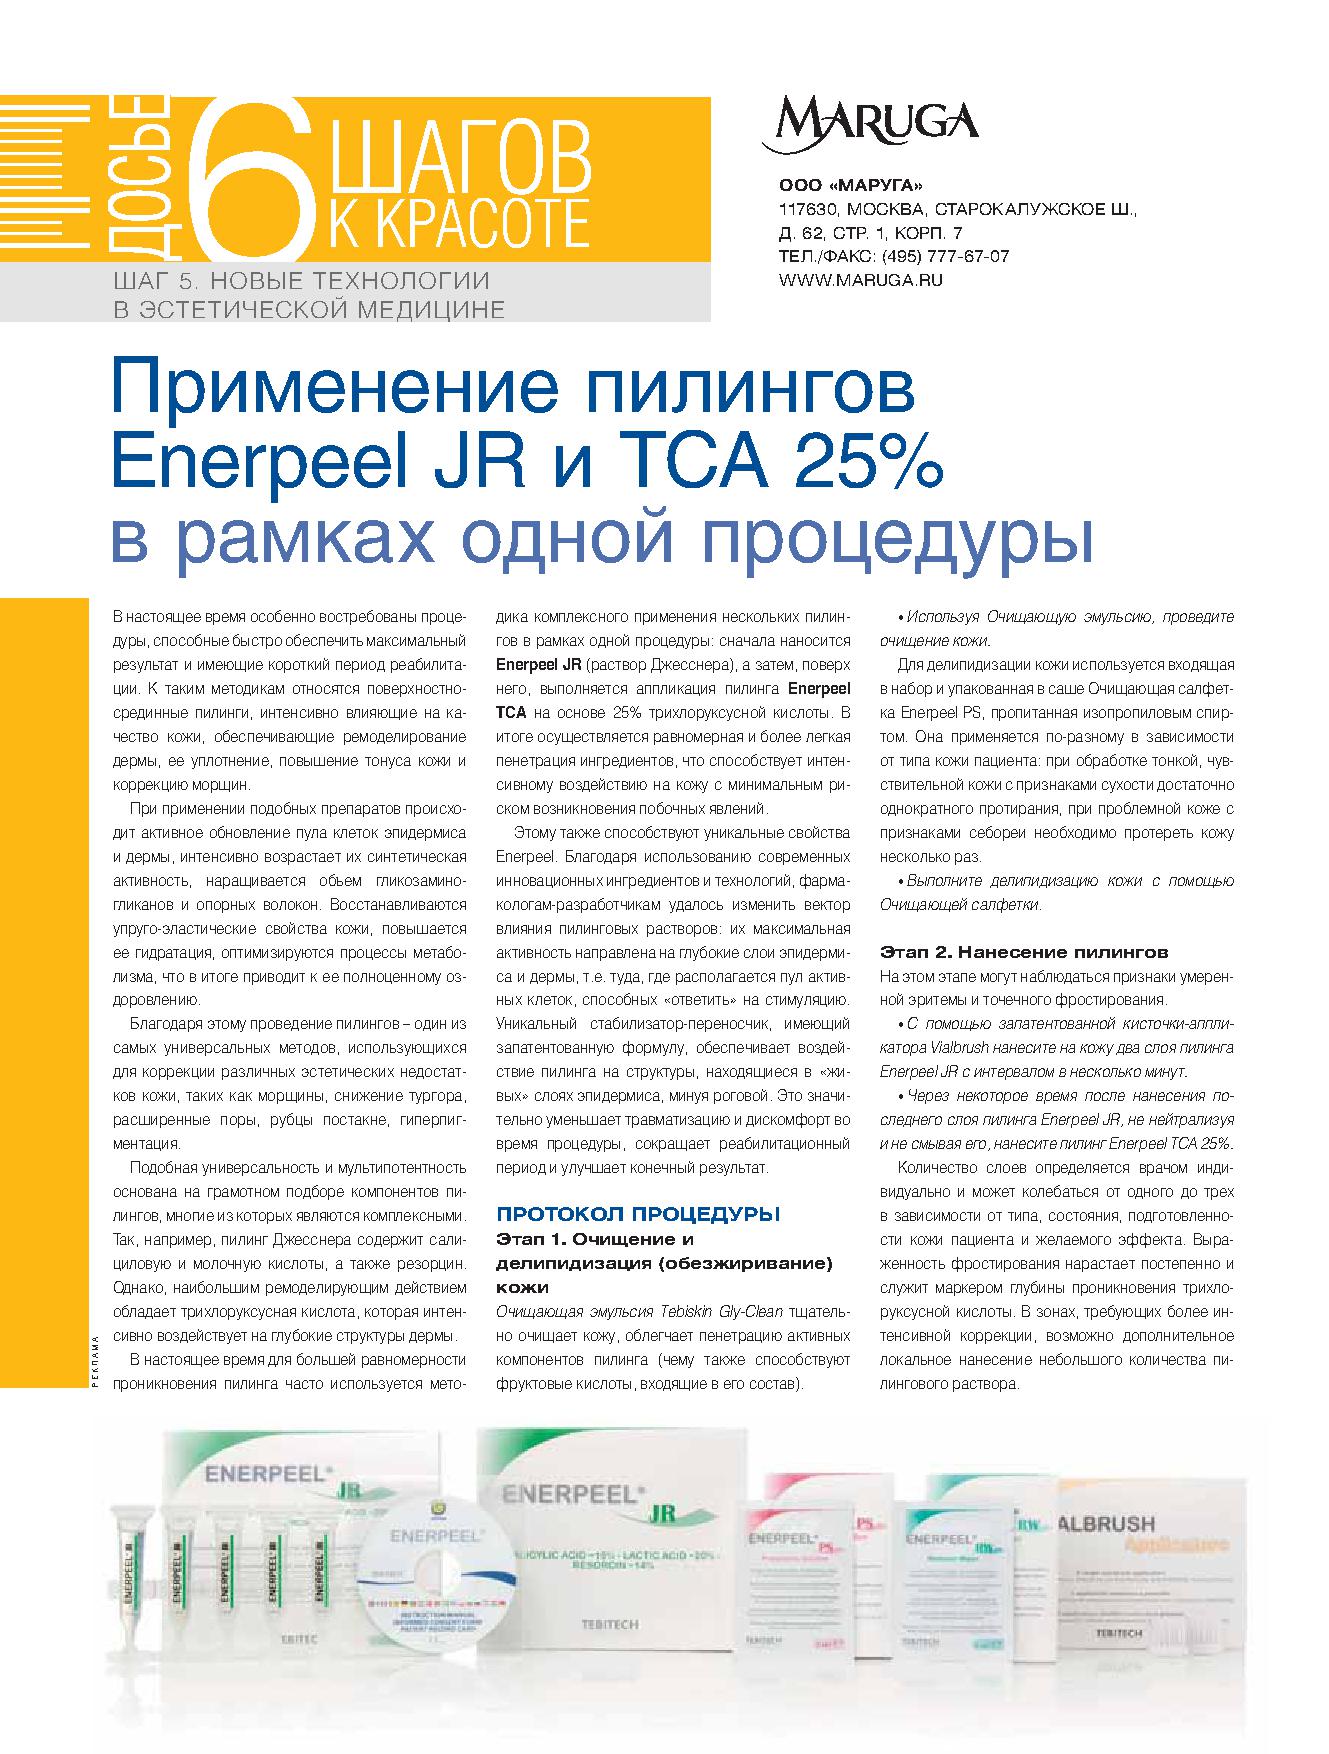 Enerpeel JR и TCA 25%